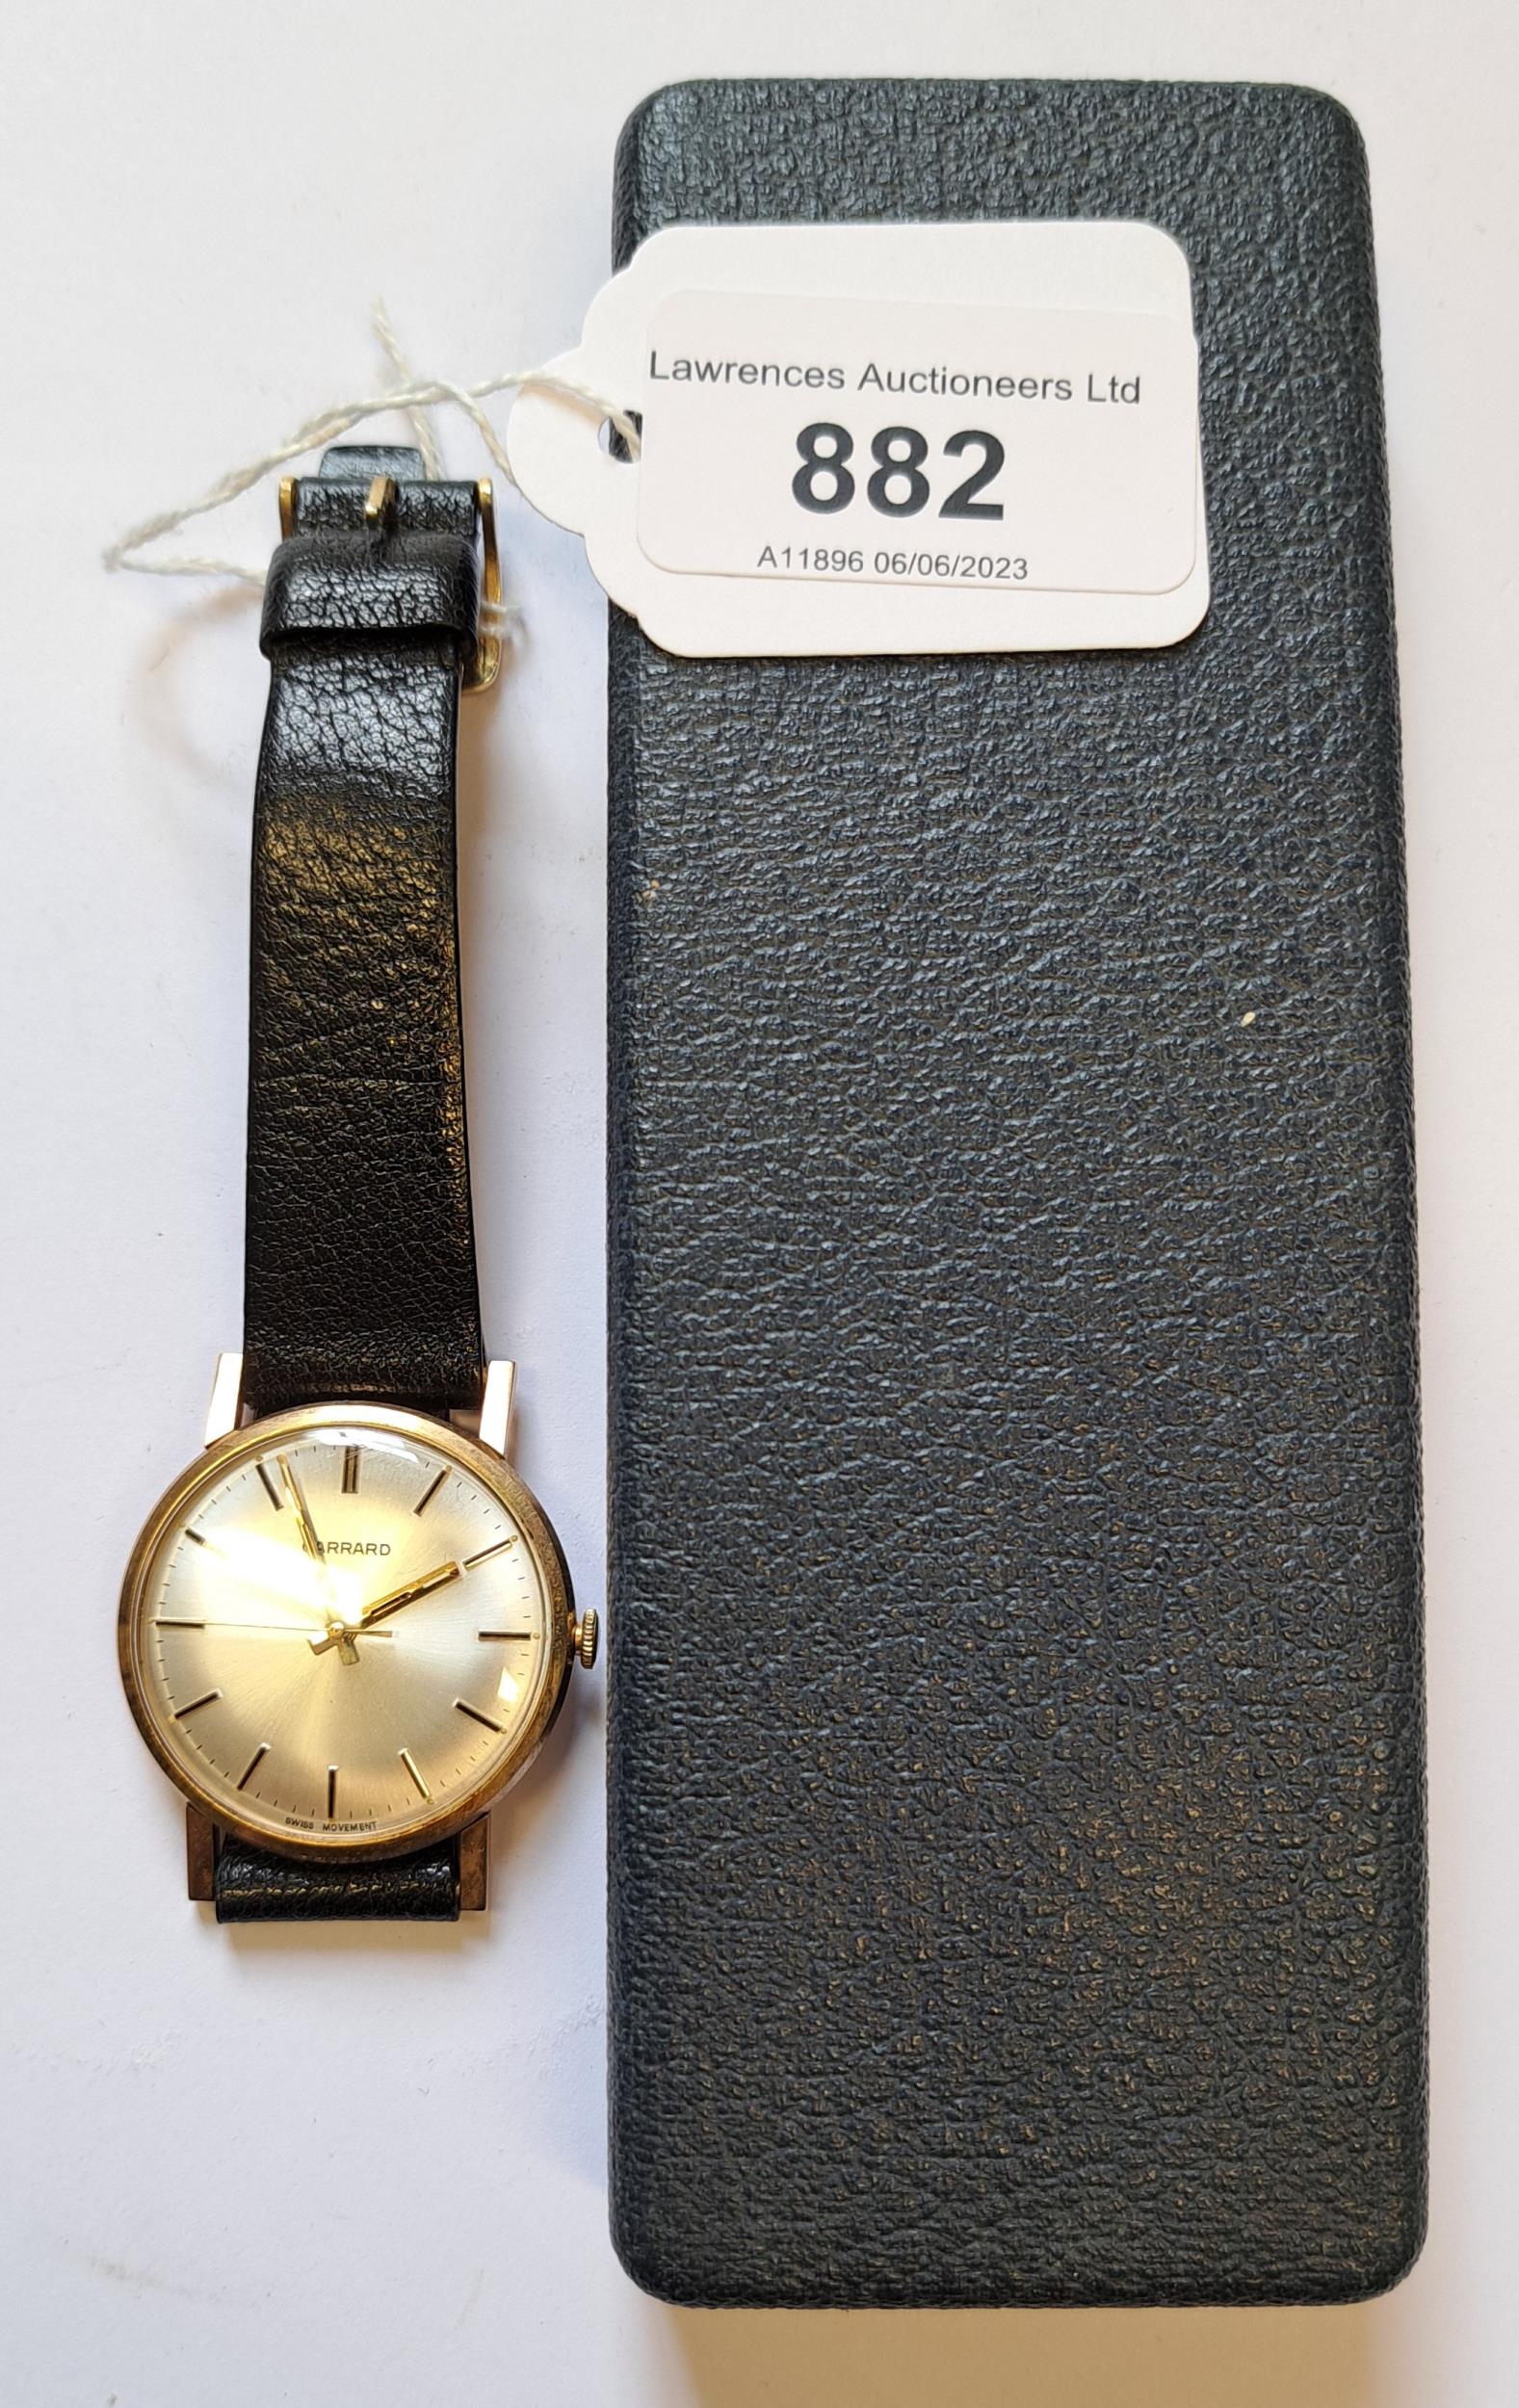 Garrard, gentleman's circular gold cased wristwatch with black leather strap, in original box